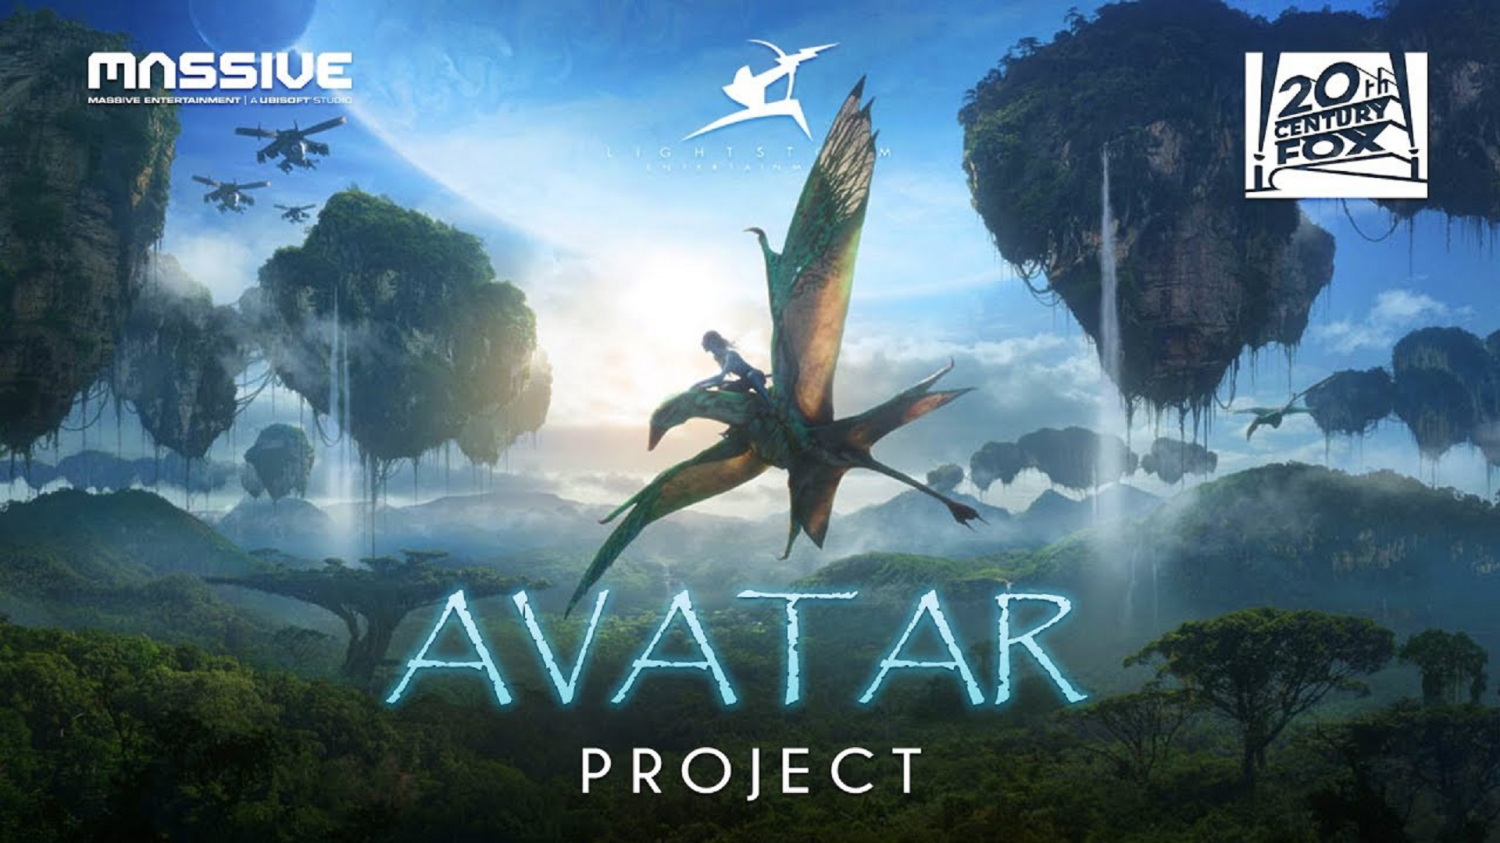 Sự ra đời của Massive\'s Avatar game đang khiến cộng đồng game trông chờ mong. Một thế giới mê hoặc đầy bí ẩn với những sinh vật kỳ lạ sẽ được tái hiện với độ chân thực tuyệt đối. Hãy chuẩn bị cho những trải nghiệm tuyệt vời nhất từ trước đến nay.